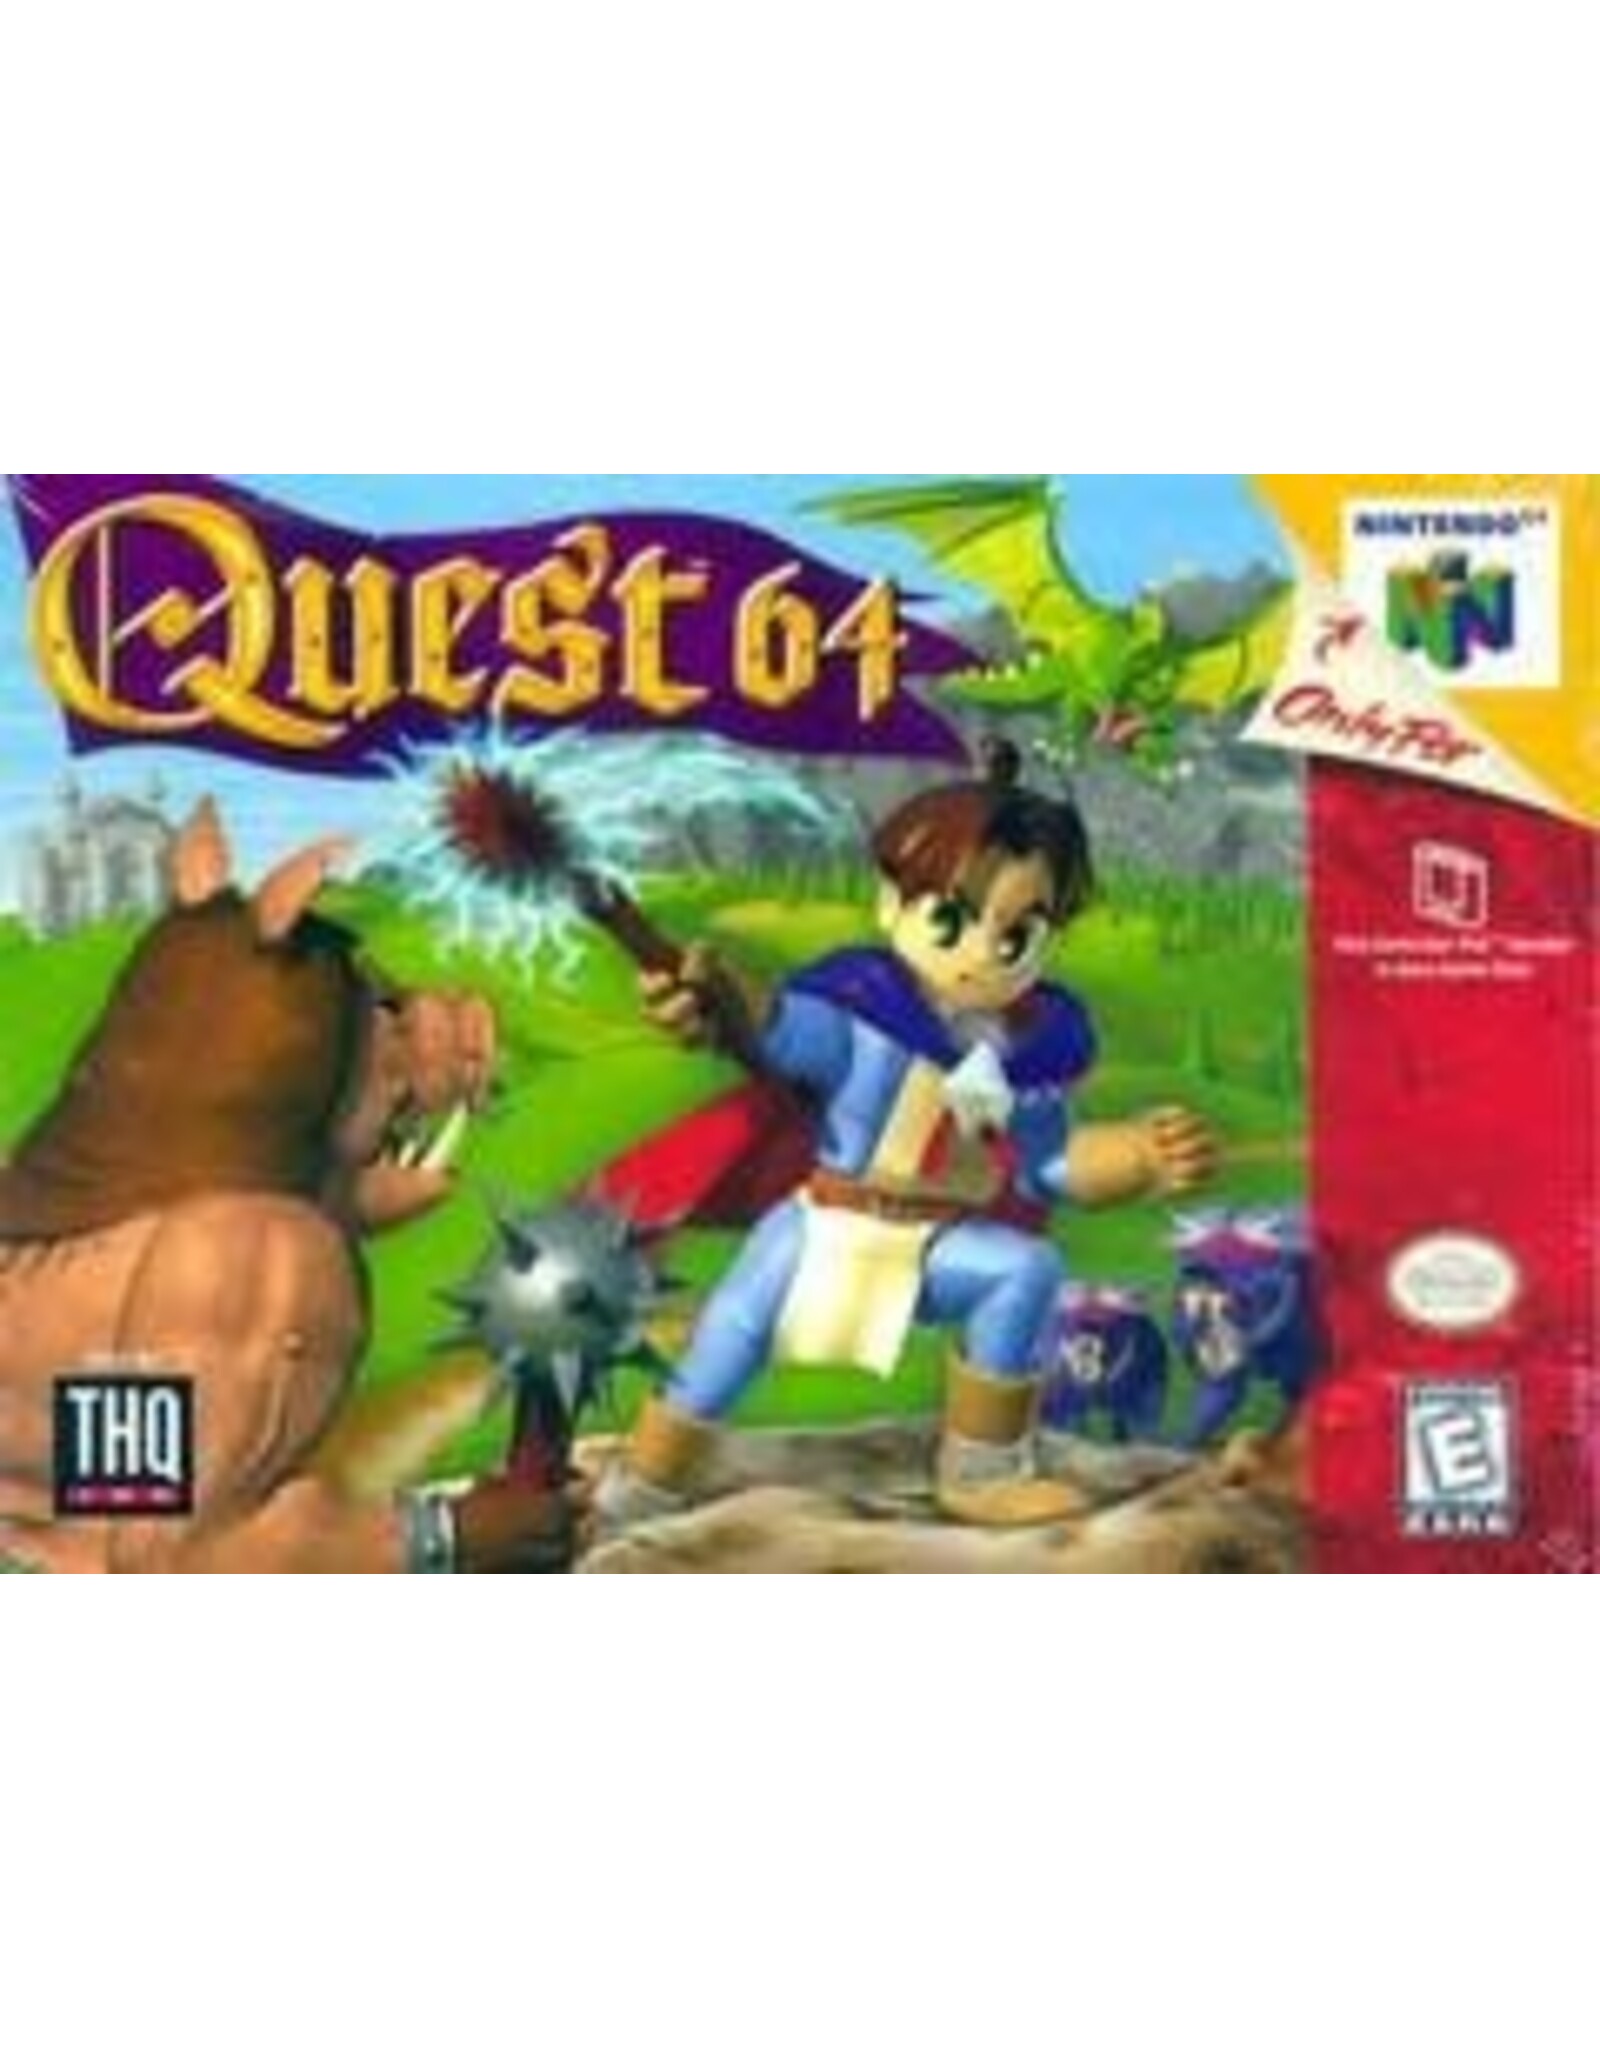 Nintendo 64 Quest 64 (CiB, No Poster)